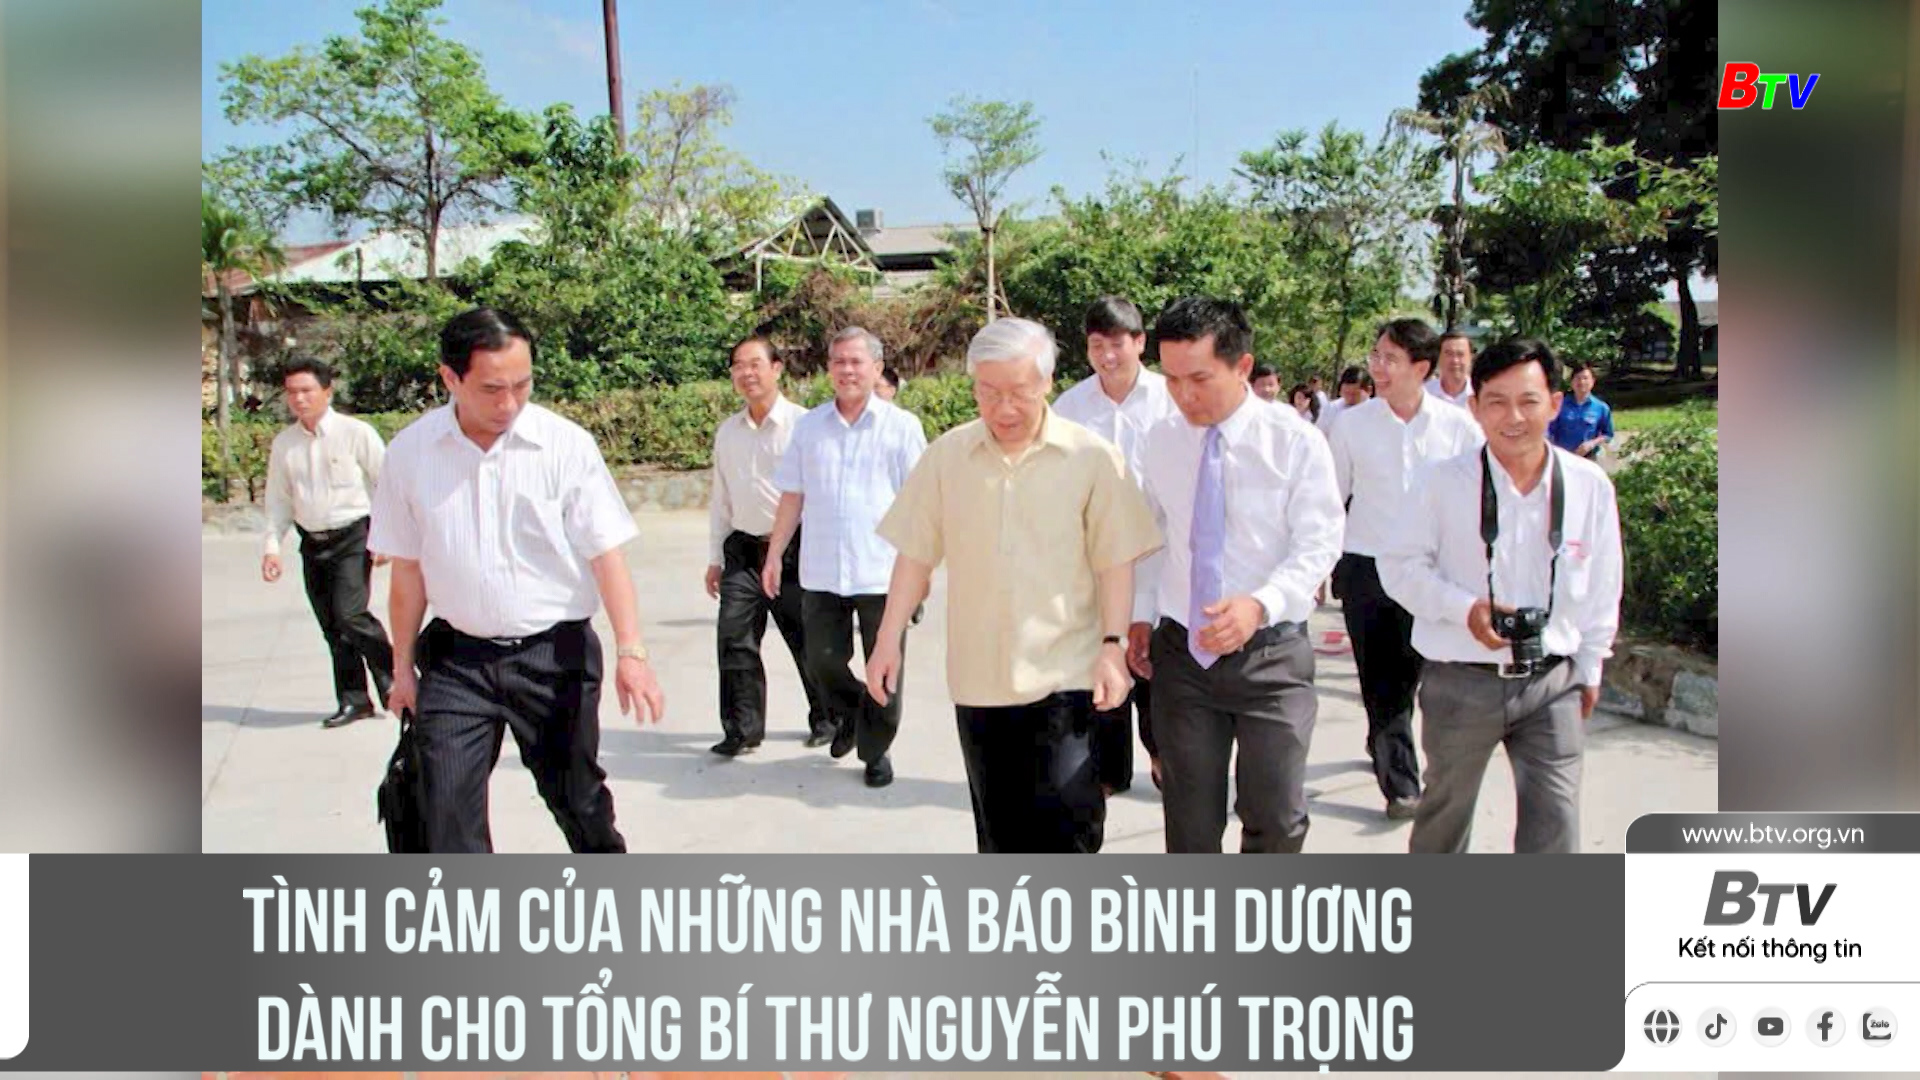 Tình cảm của những Nhà báo Bình Dương dành cho Tổng Bí thư Nguyễn Phú Trọng